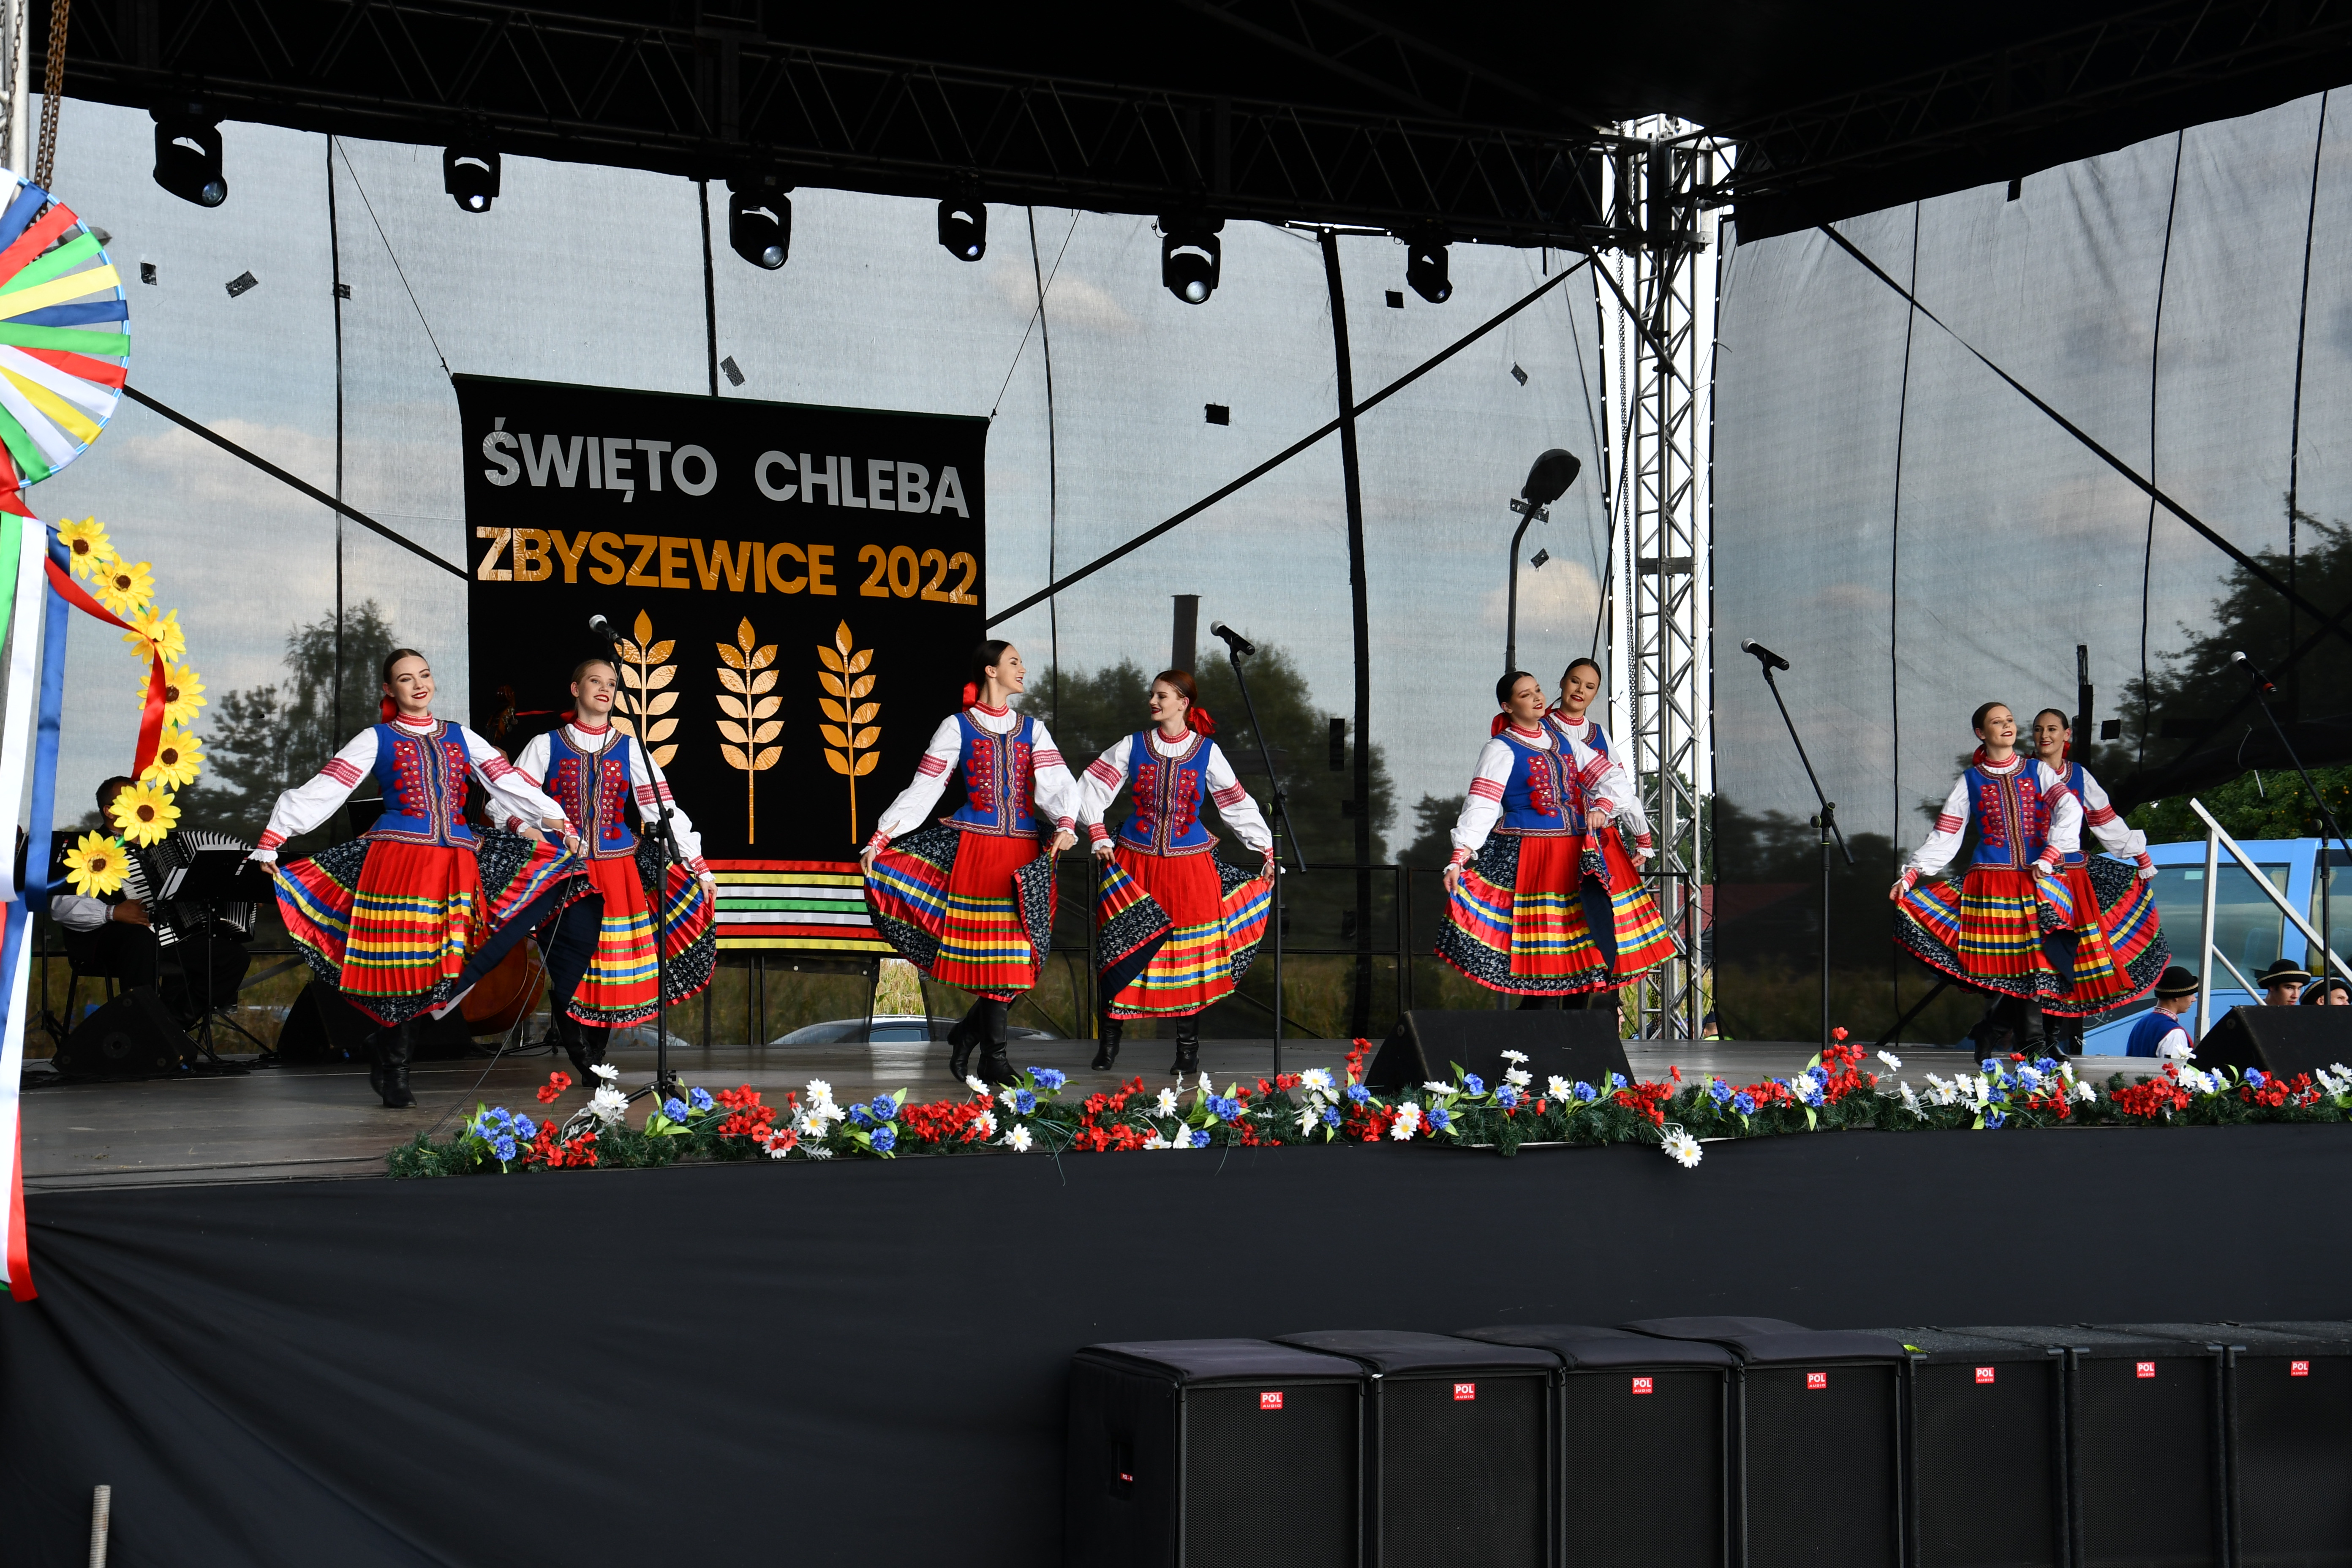 tancerki w strojach ludowych na scenie, w tle napis Święto chleba Zbyszewice 2022 i symbole kłosów